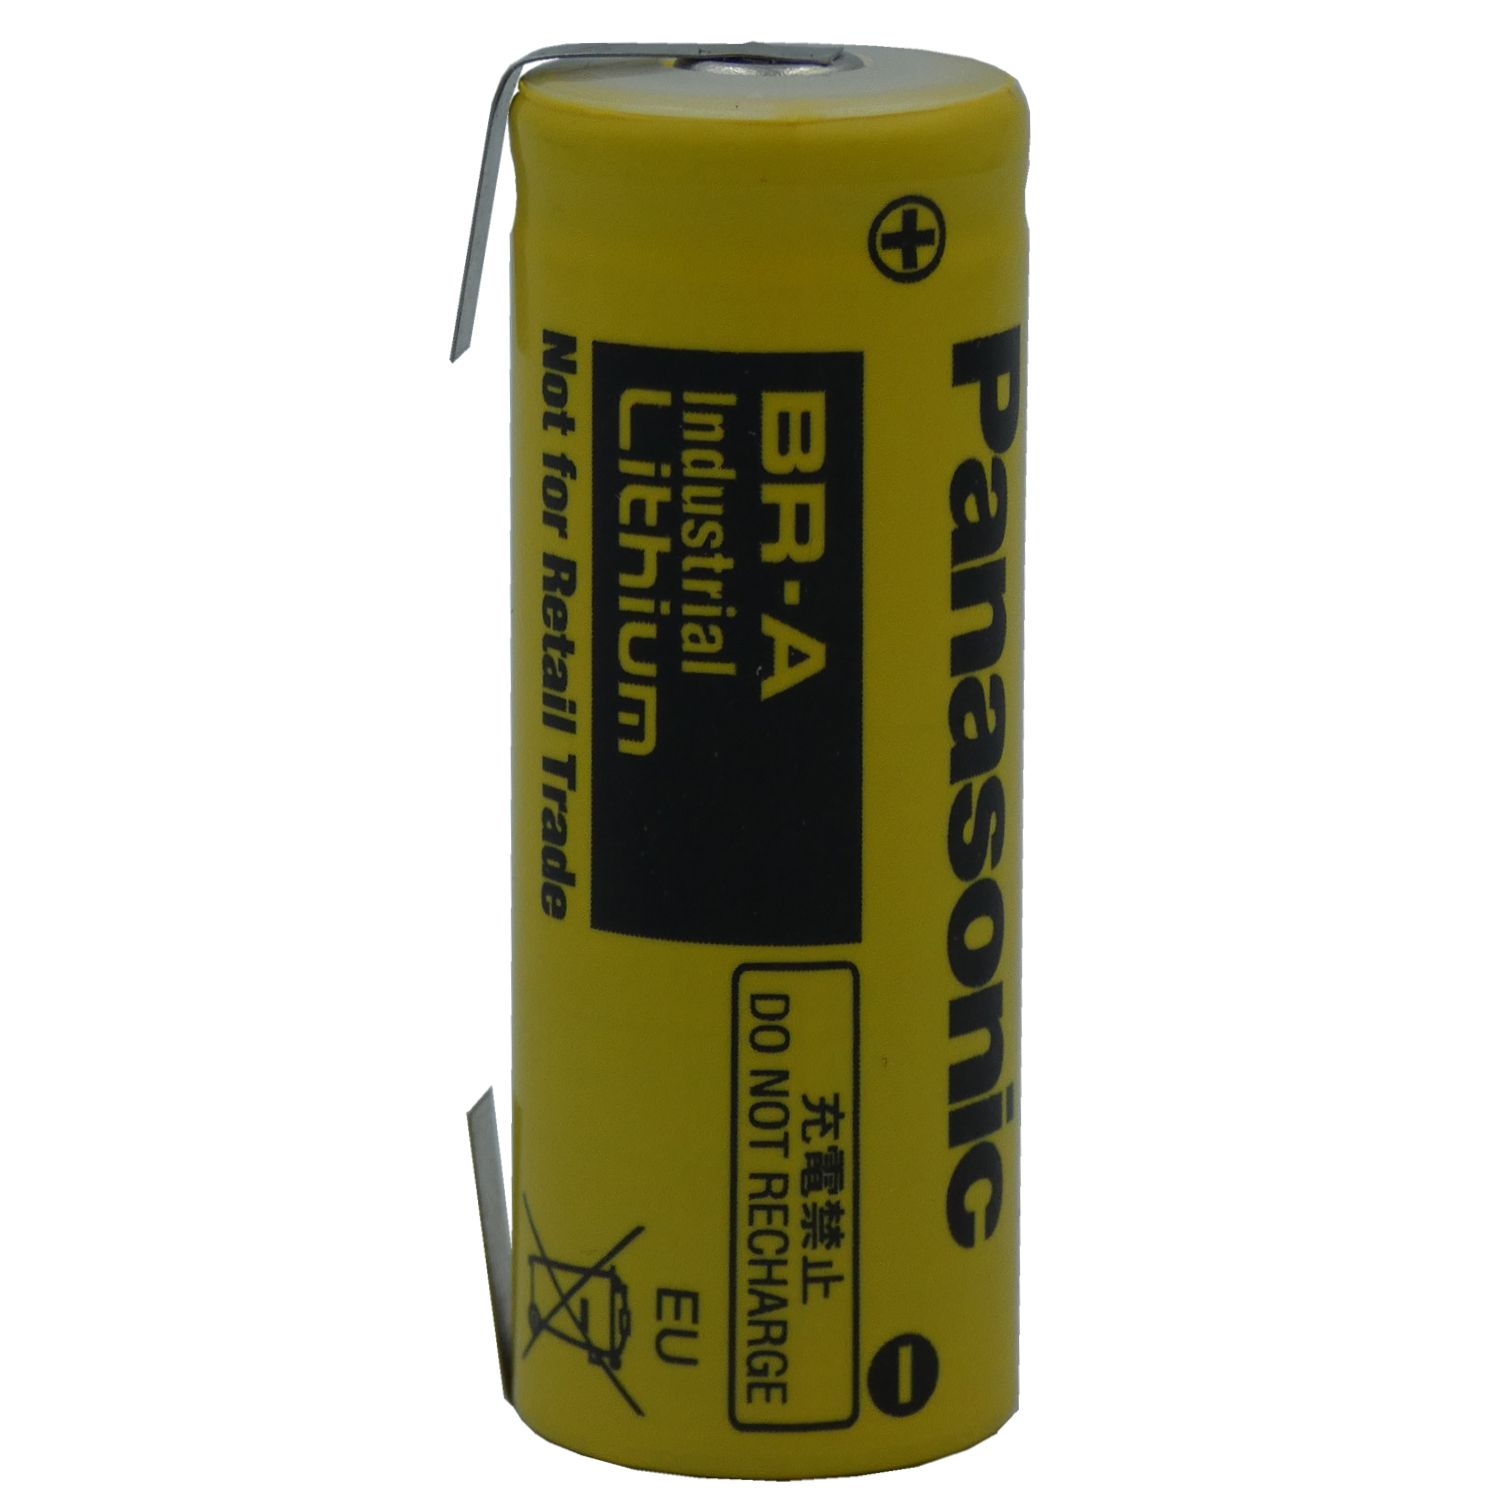 Panasonic Lithium Batterie  BR-A  mit Lötfahnen in U-Form